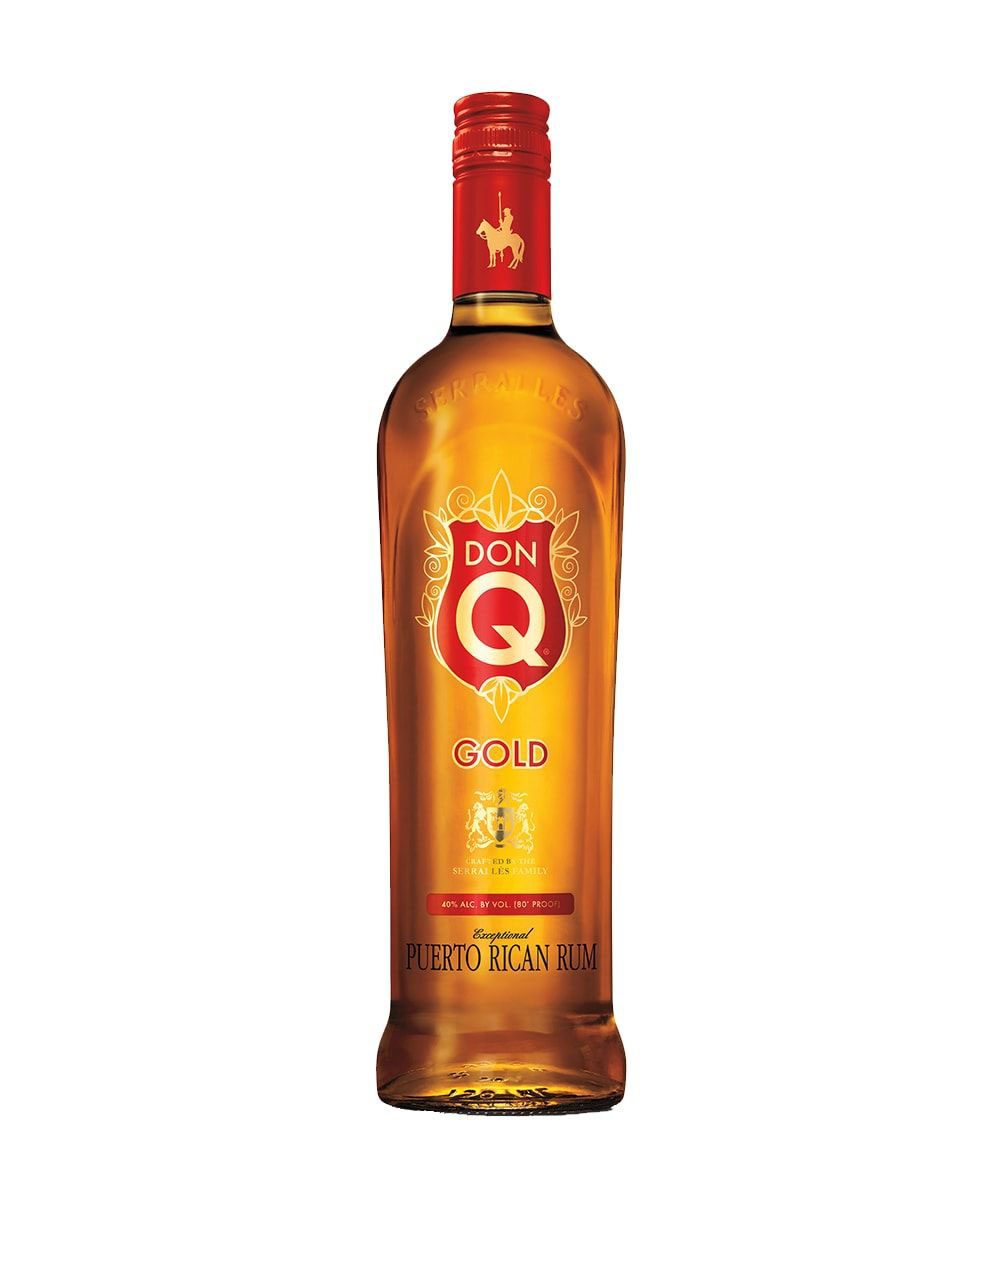 Koloa Kaua`i Gold Rum